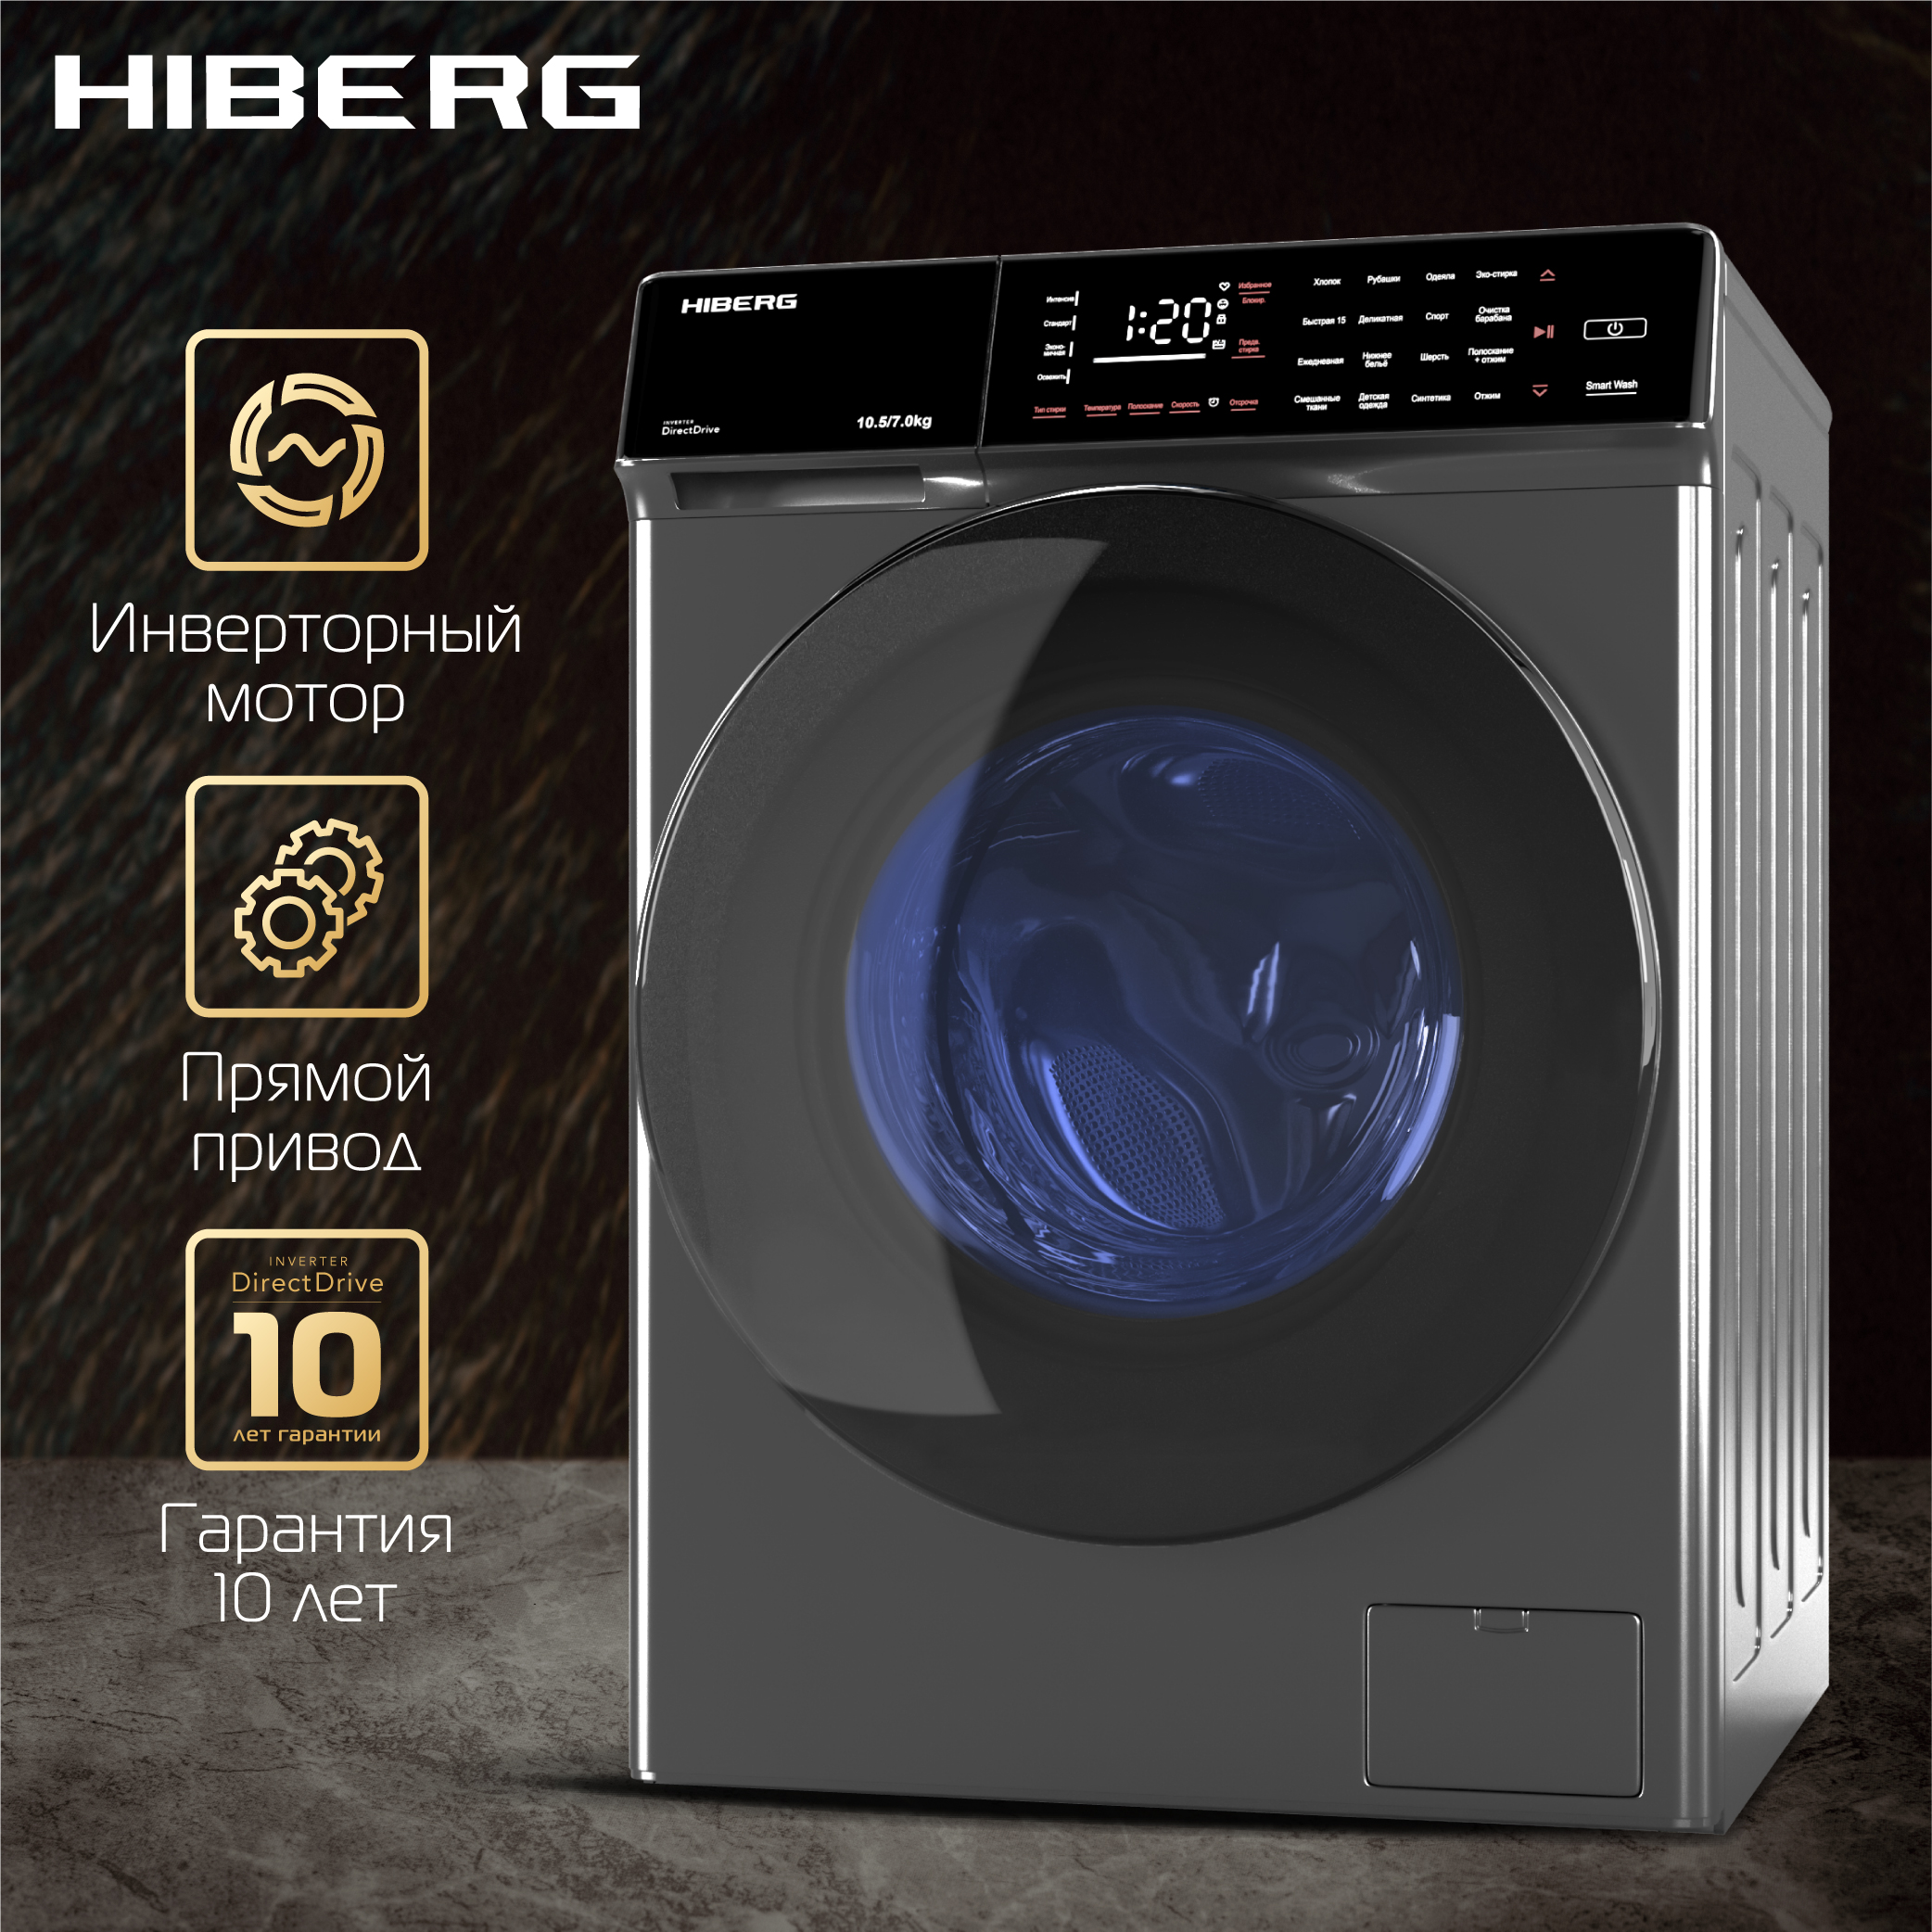 Стиральная машина Hiberg i-DDQ9 - 10714 Sd серебристый стиральная машина hiberg i ddq9 10714 w серебристый